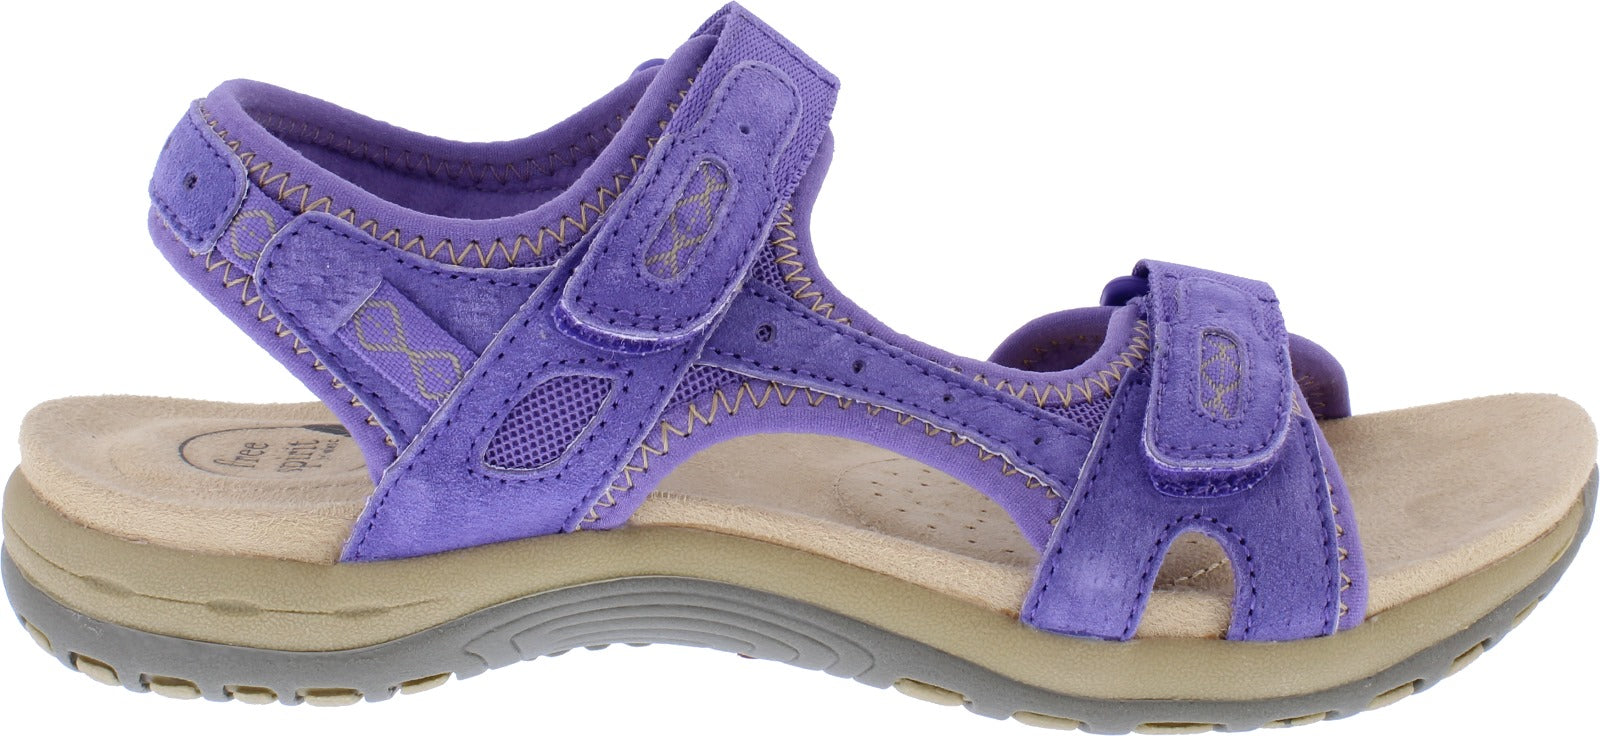 Free Spirit Frisco Ladies Purple Suede & Textile Touch Fastening Sandals